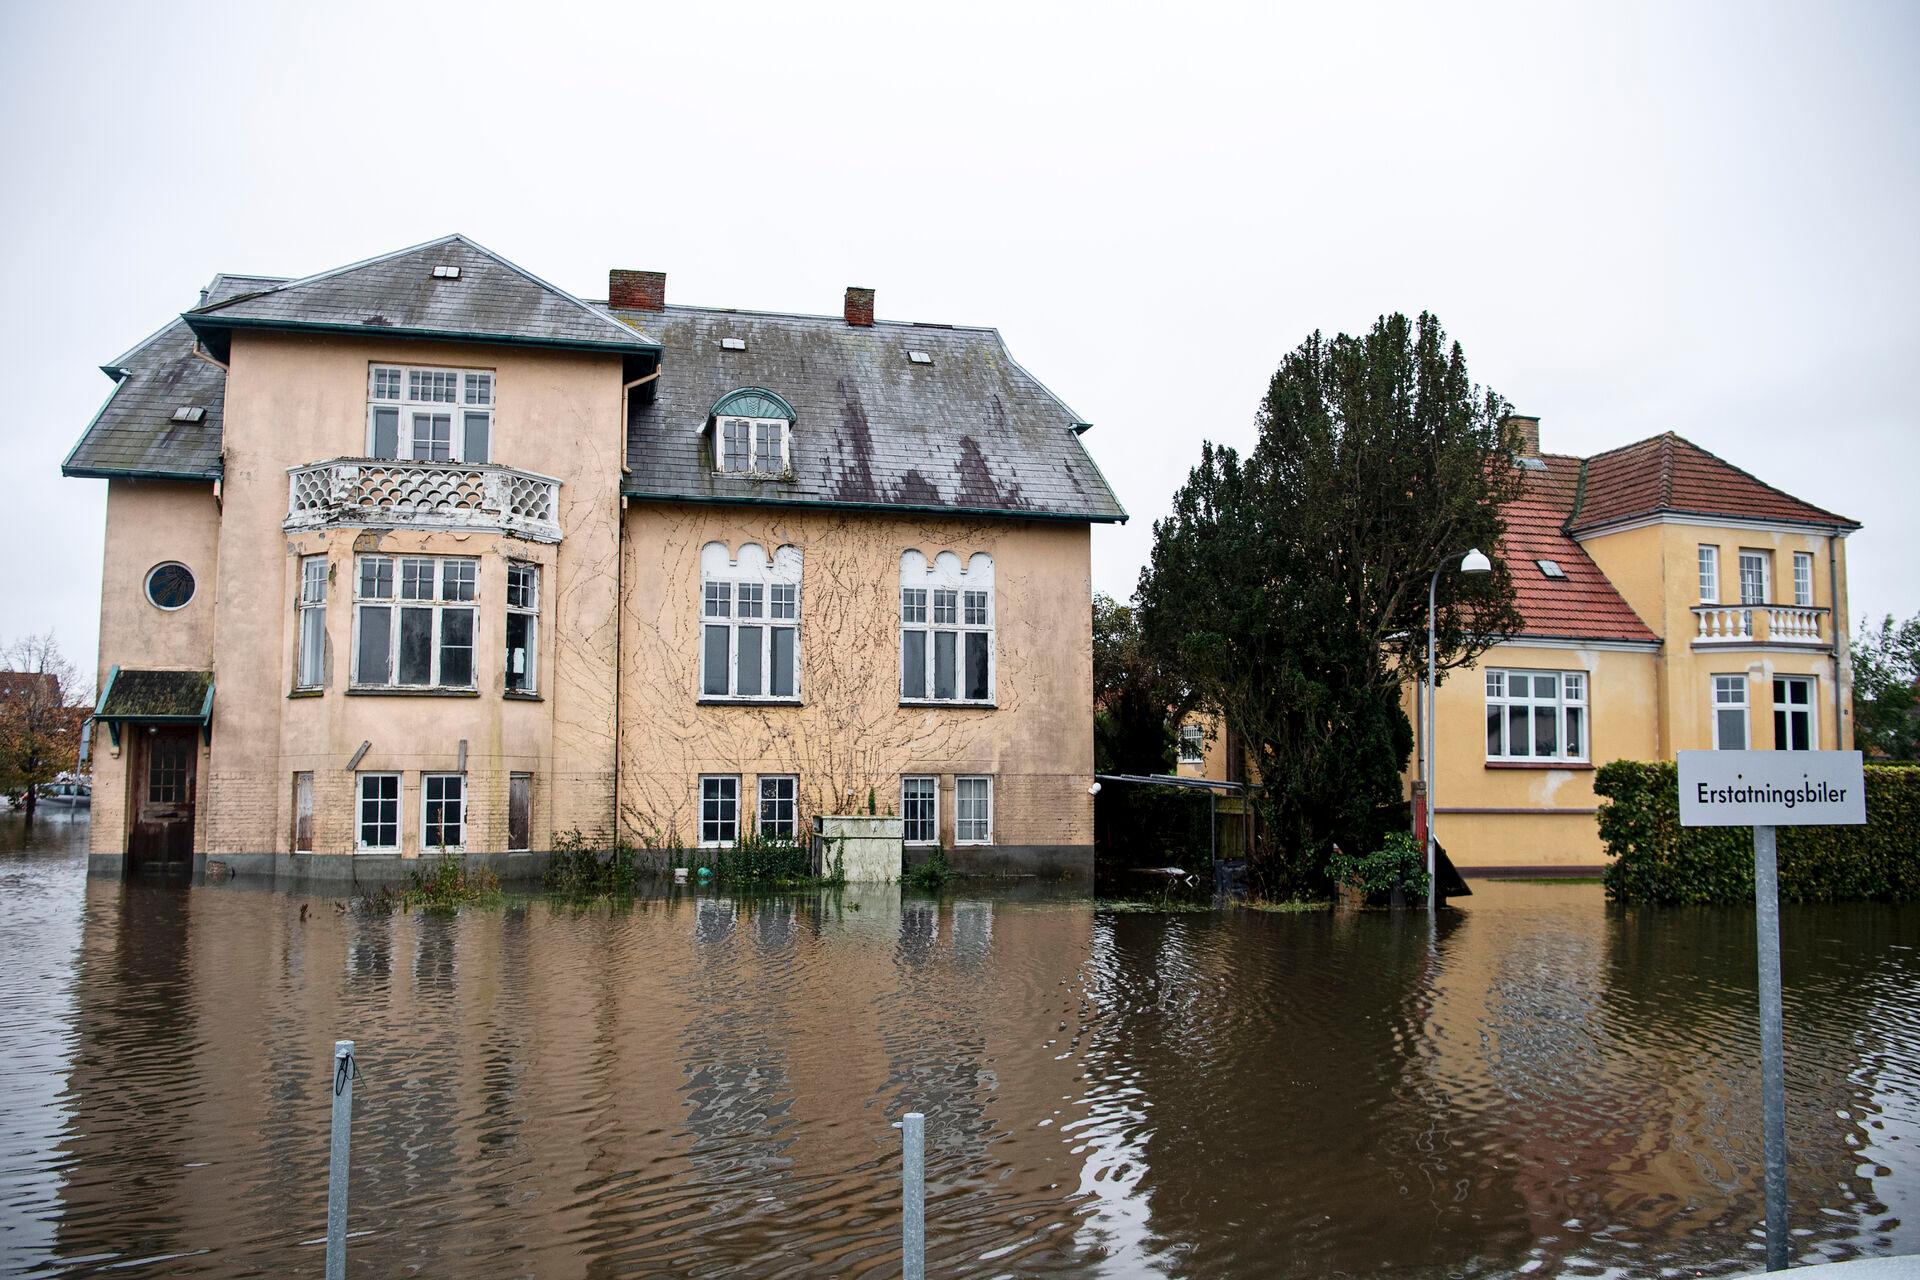 Weekendens stormflod sendte det sydlige Danmark under vand. Her ses oversvømmede huse i Præstø på Sydsjælland.